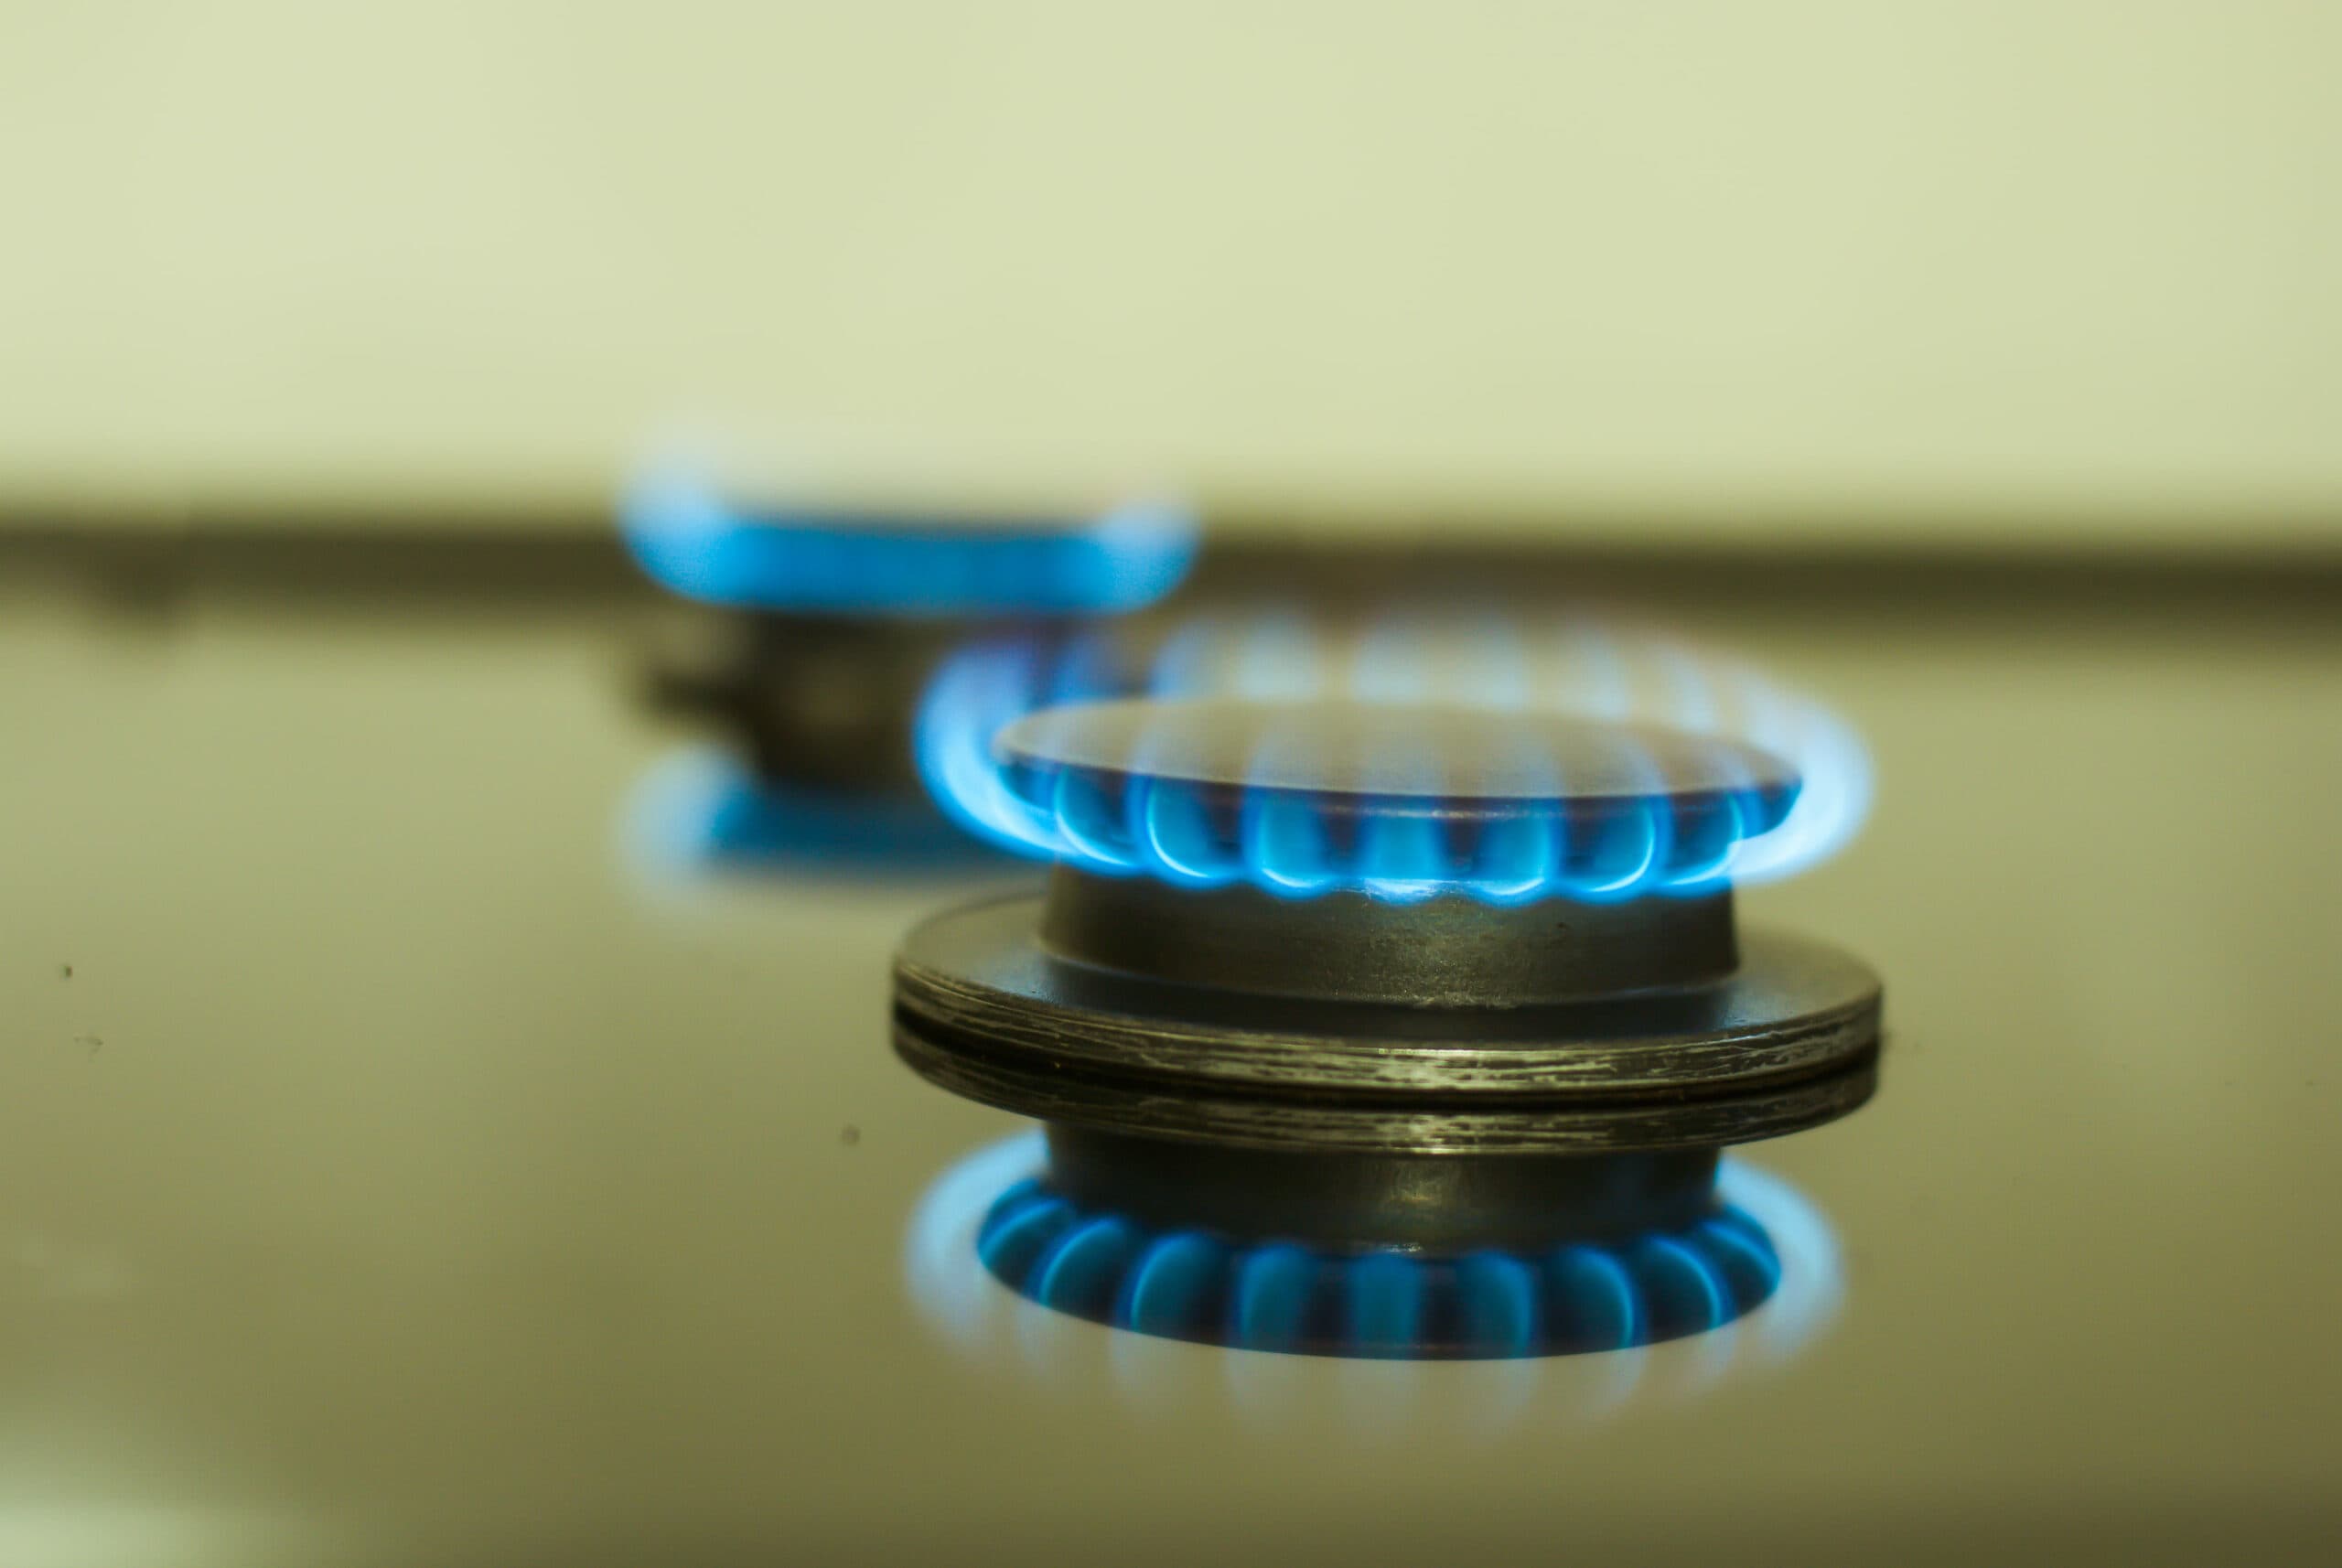 Beneficios del Gas LP para invierno beneficios del gas lp para invierno - gas cocina 1 scaled - Beneficios del Gas LP para invierno